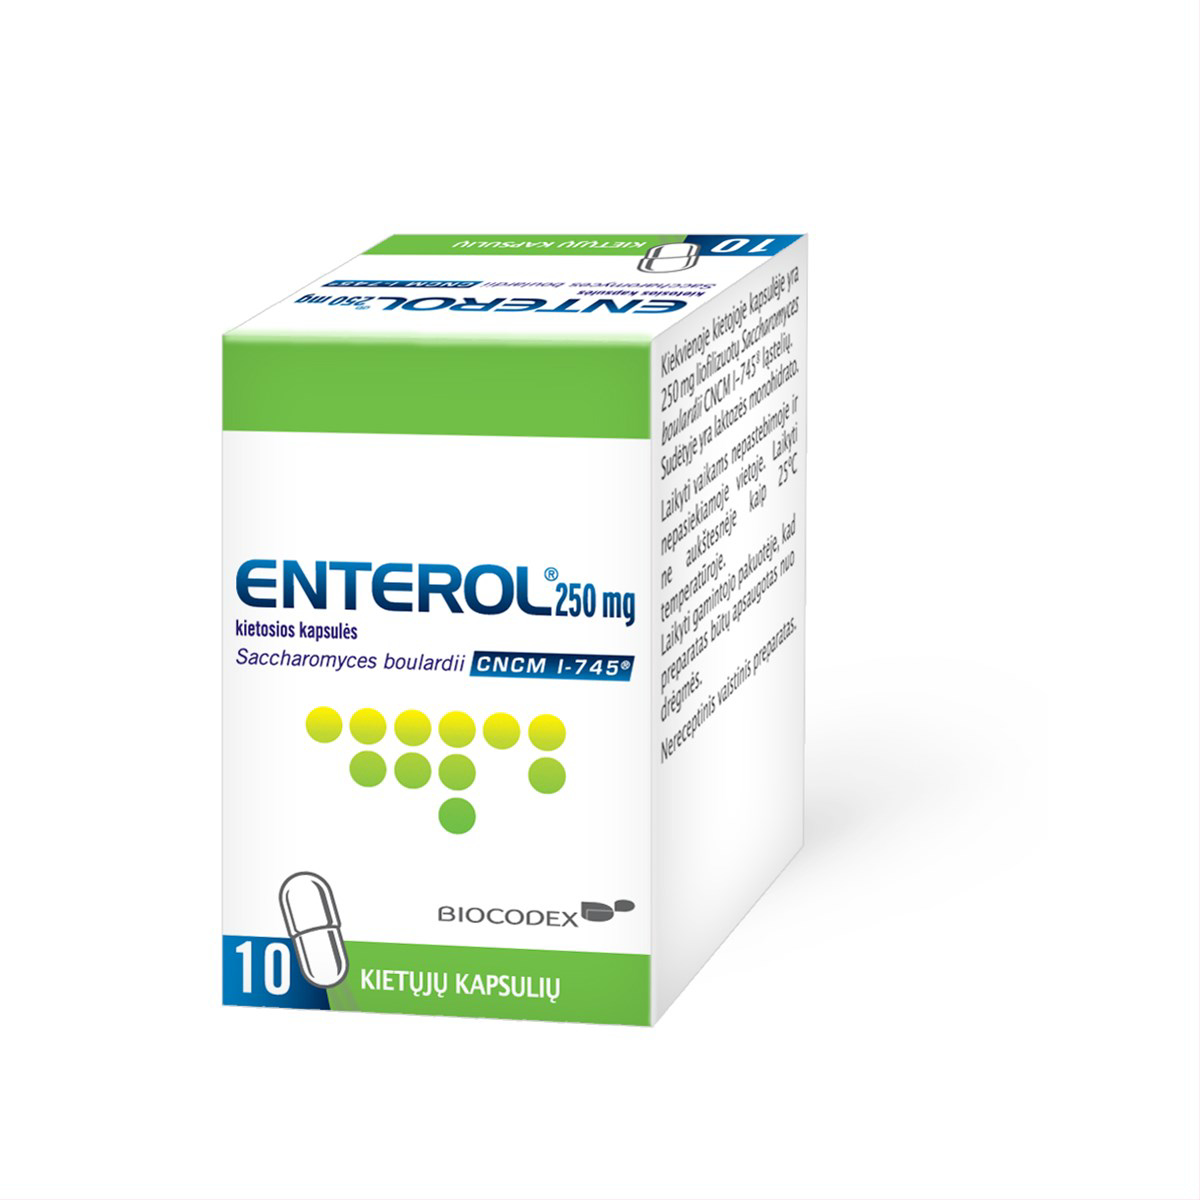 ENTEROL, 250 mg, kietosios kapsulės, N10